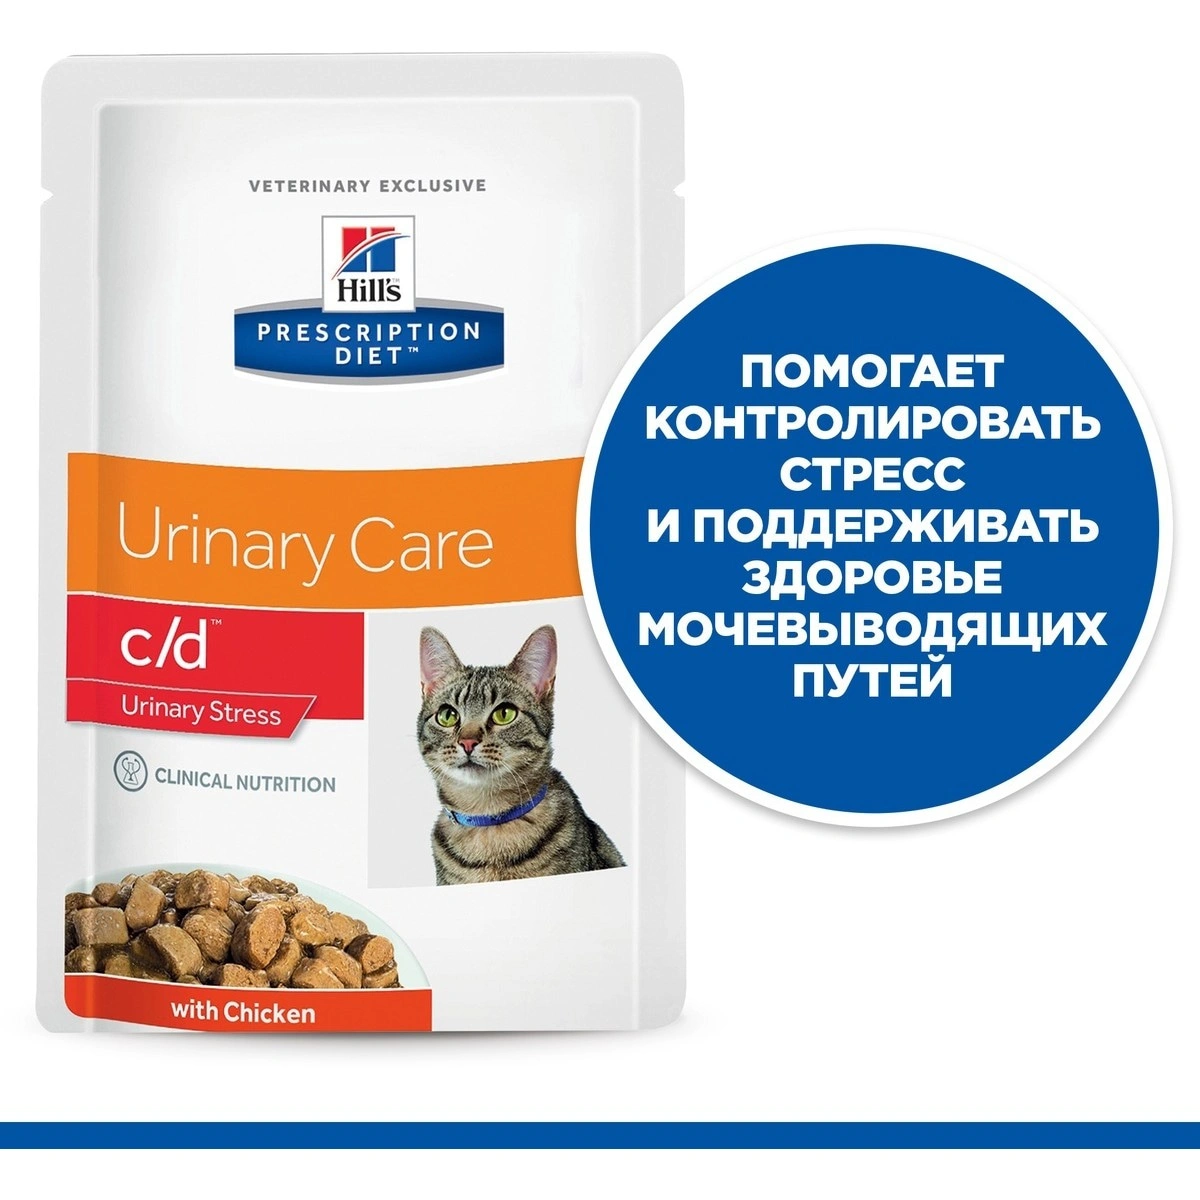 HILLS Prescription Diet c/d Metabolic + Urinary Stress консервы для кошек  при профилактике цистита, вызванного